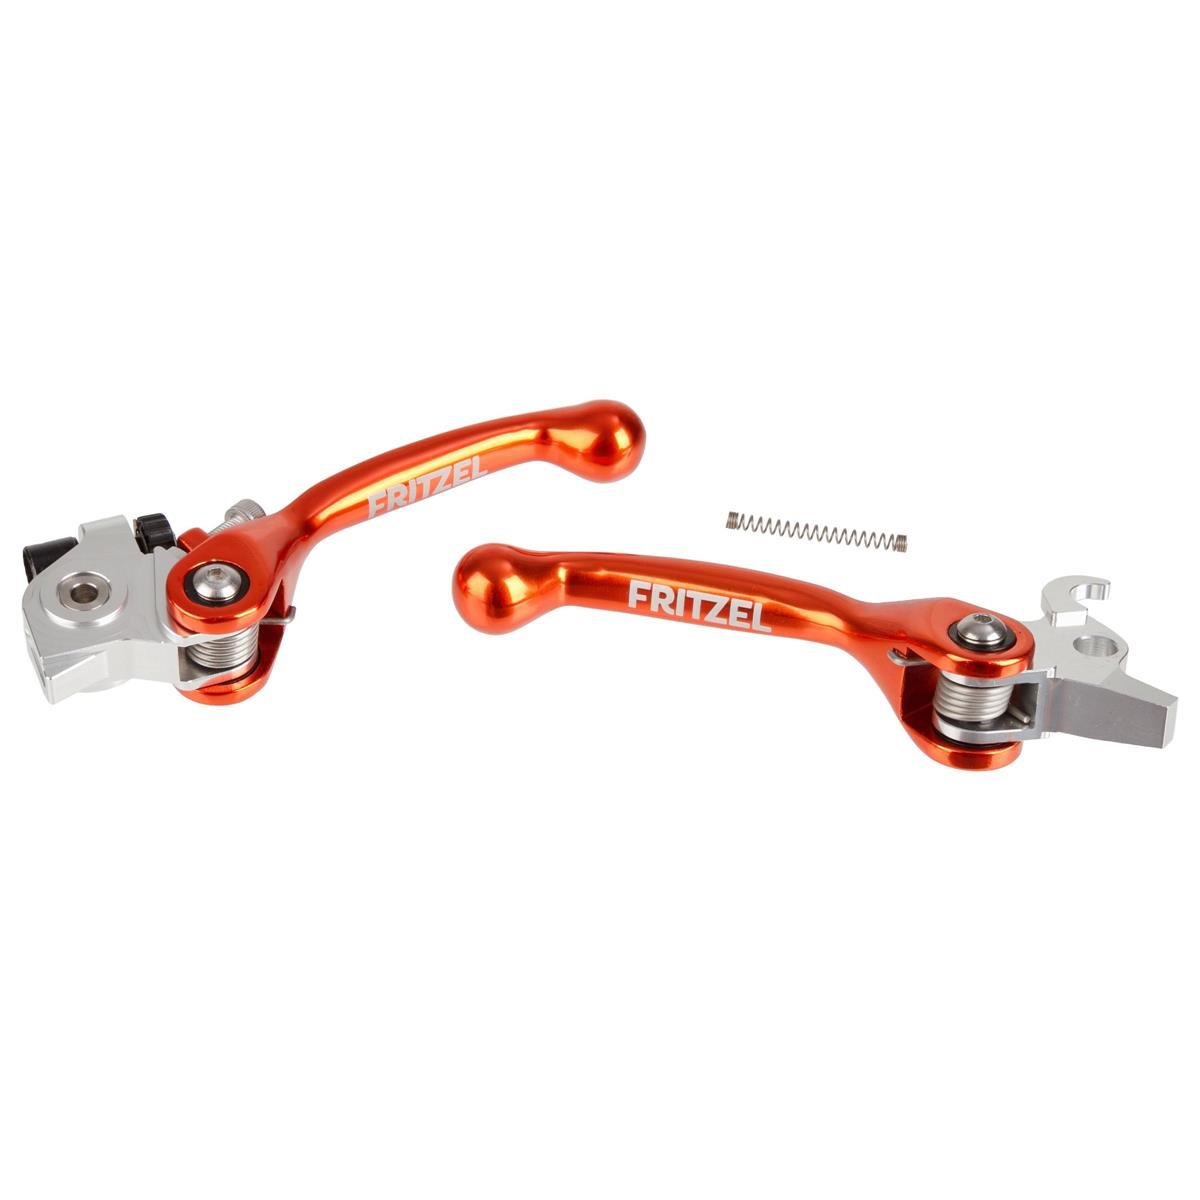 FRITZEL Brems-/Kupplungshebel-Set Renngespann KTM SX/SXF 250 -18, SXF 350 11-13, Aluminium, einstellbar, Orange